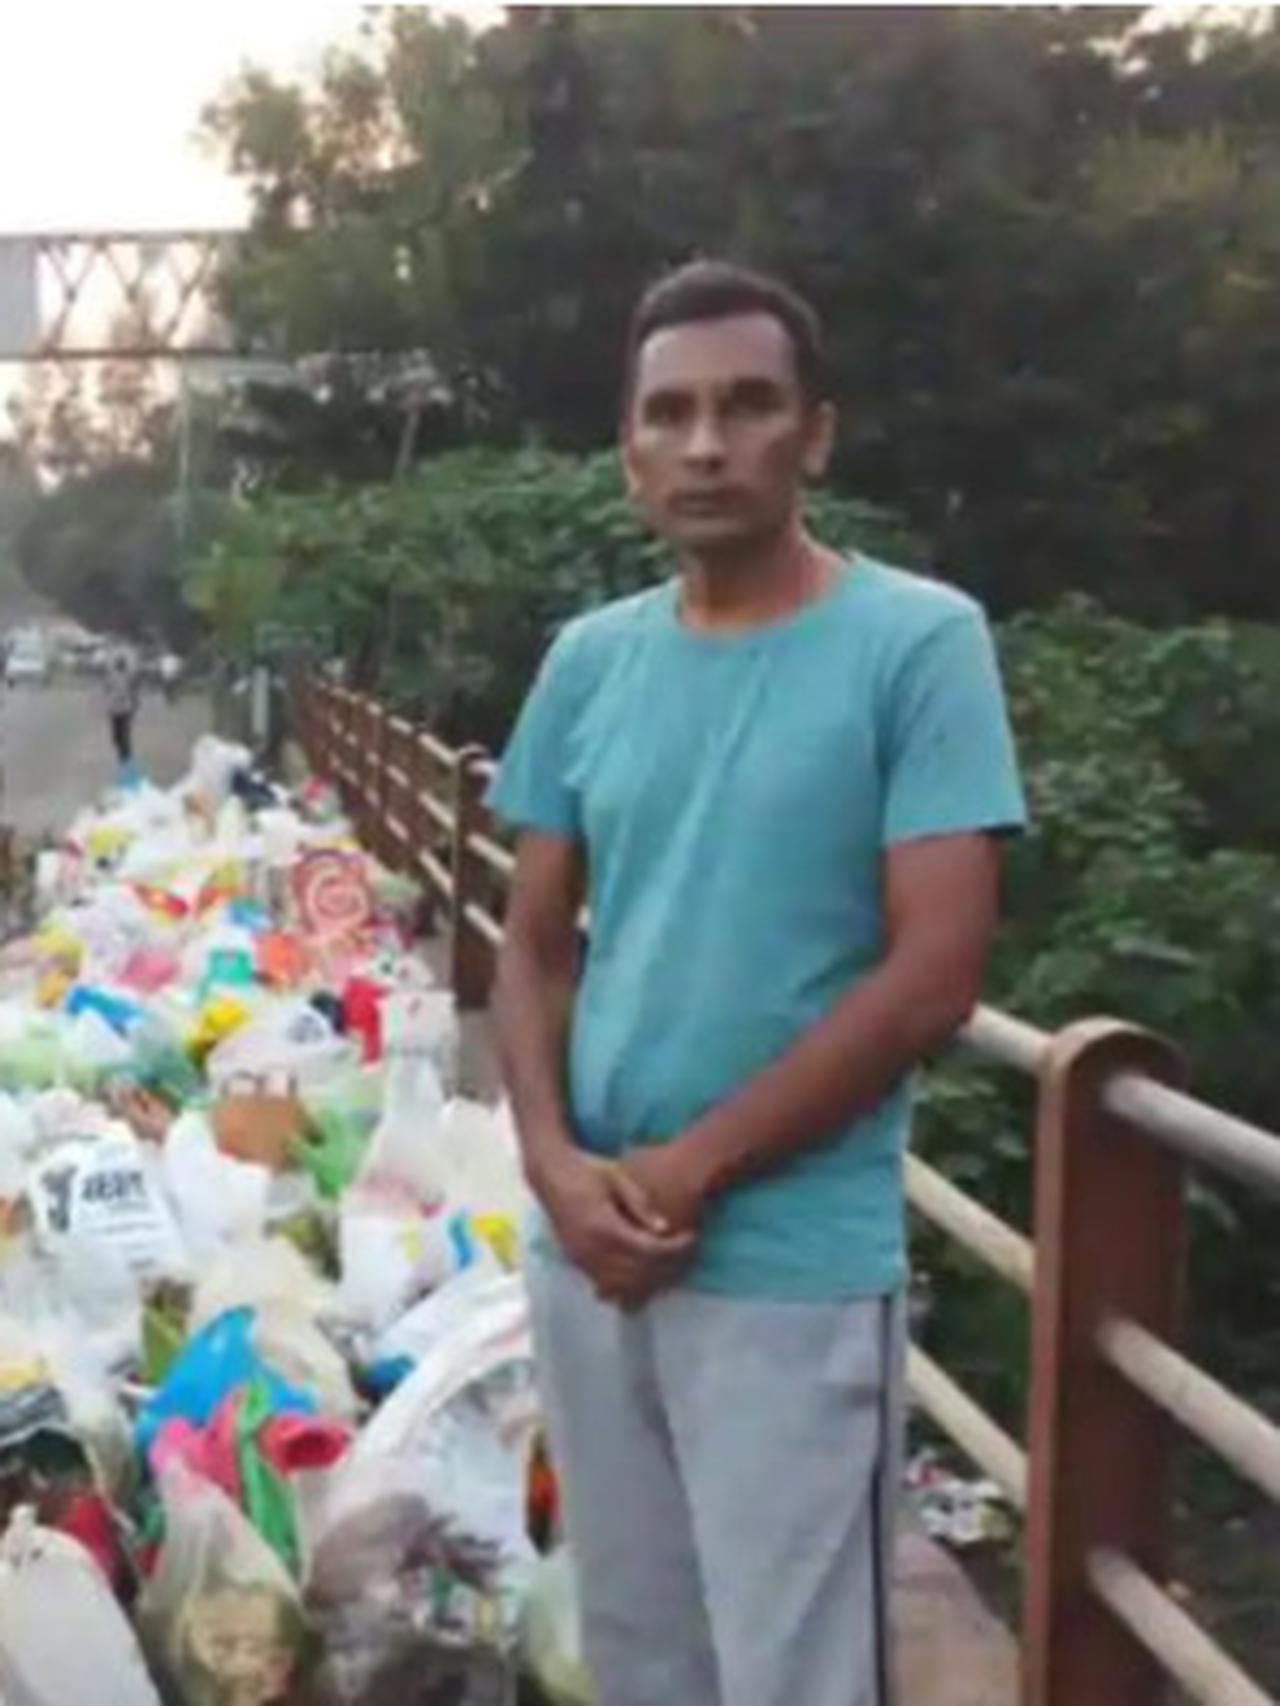 Kesal karena Air Sungai Kotor, Pria Ini Tunggui Pembuang Sampah di Jembatan Seharian Penuh